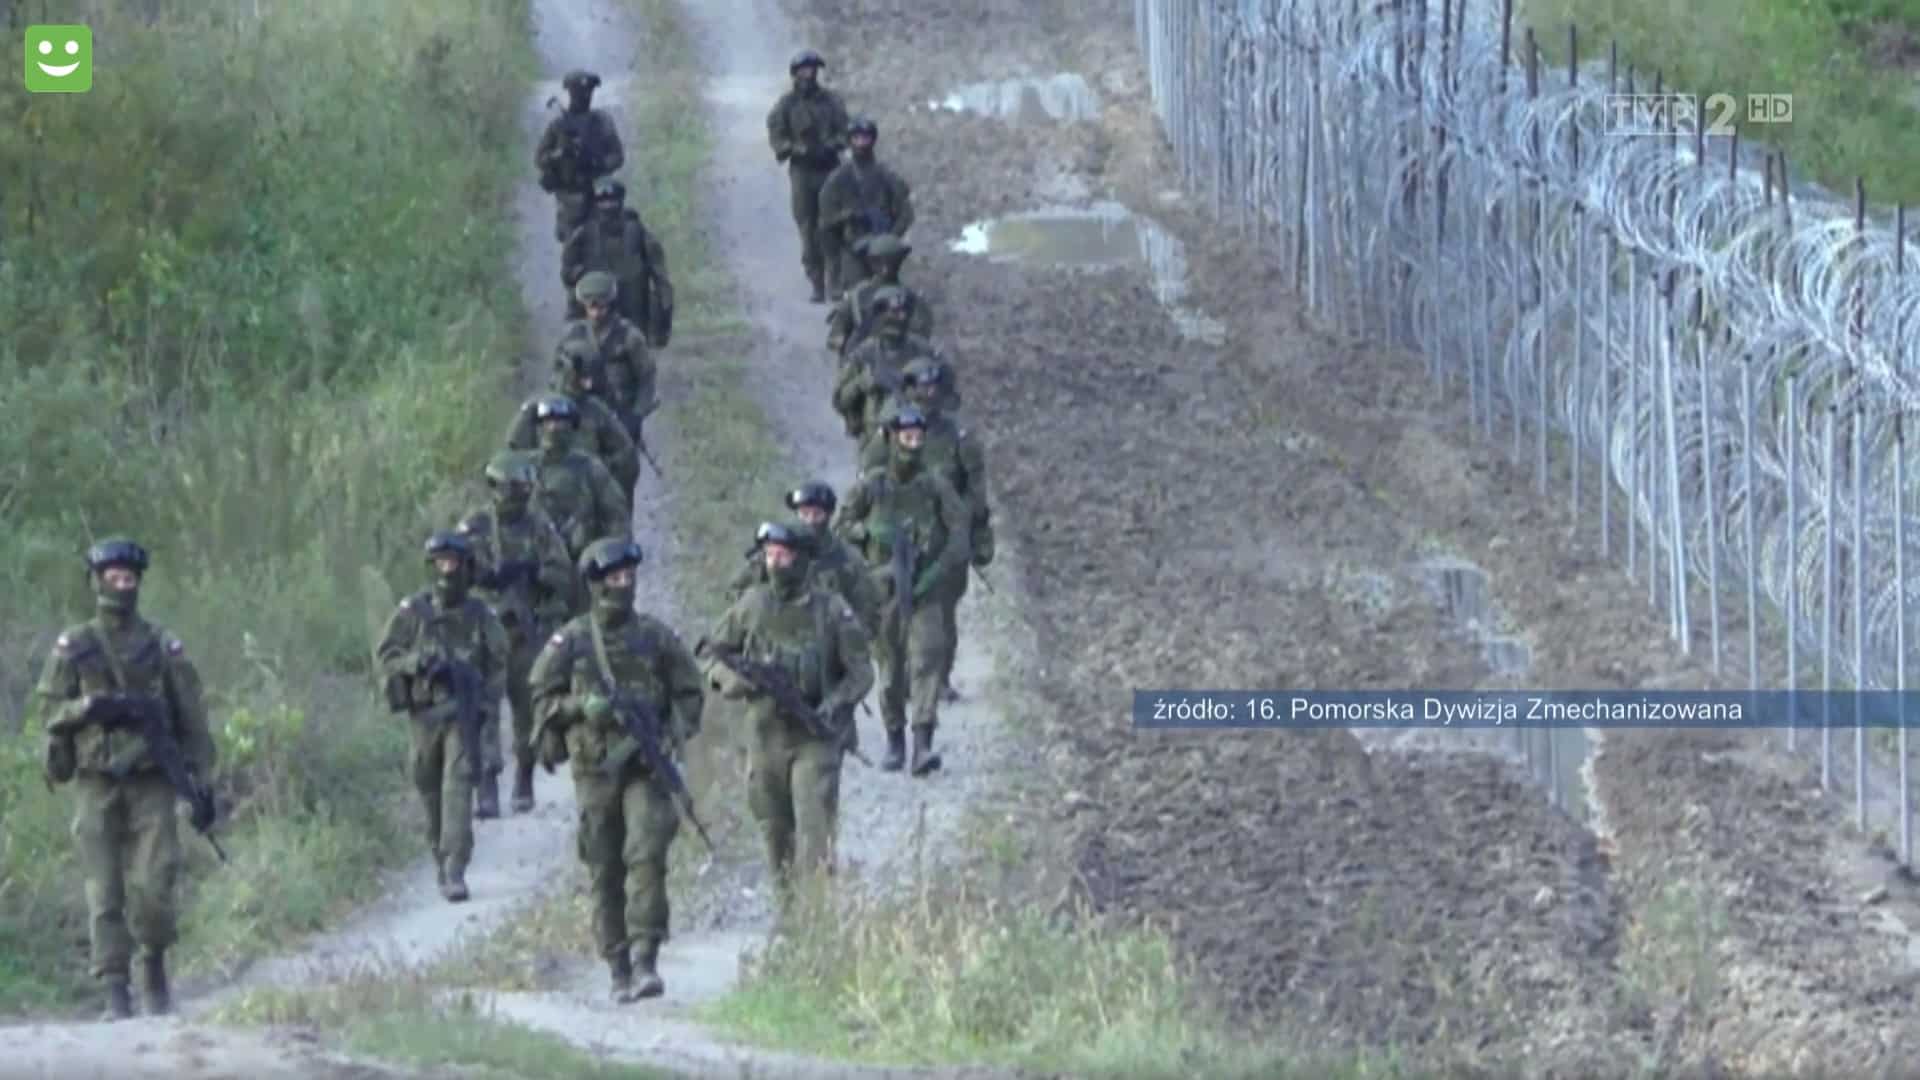 Olsztyńska Dywizja na granicy. Białorusini zaczęli do nich strzelać wojsko Olsztyn, Wiadomości